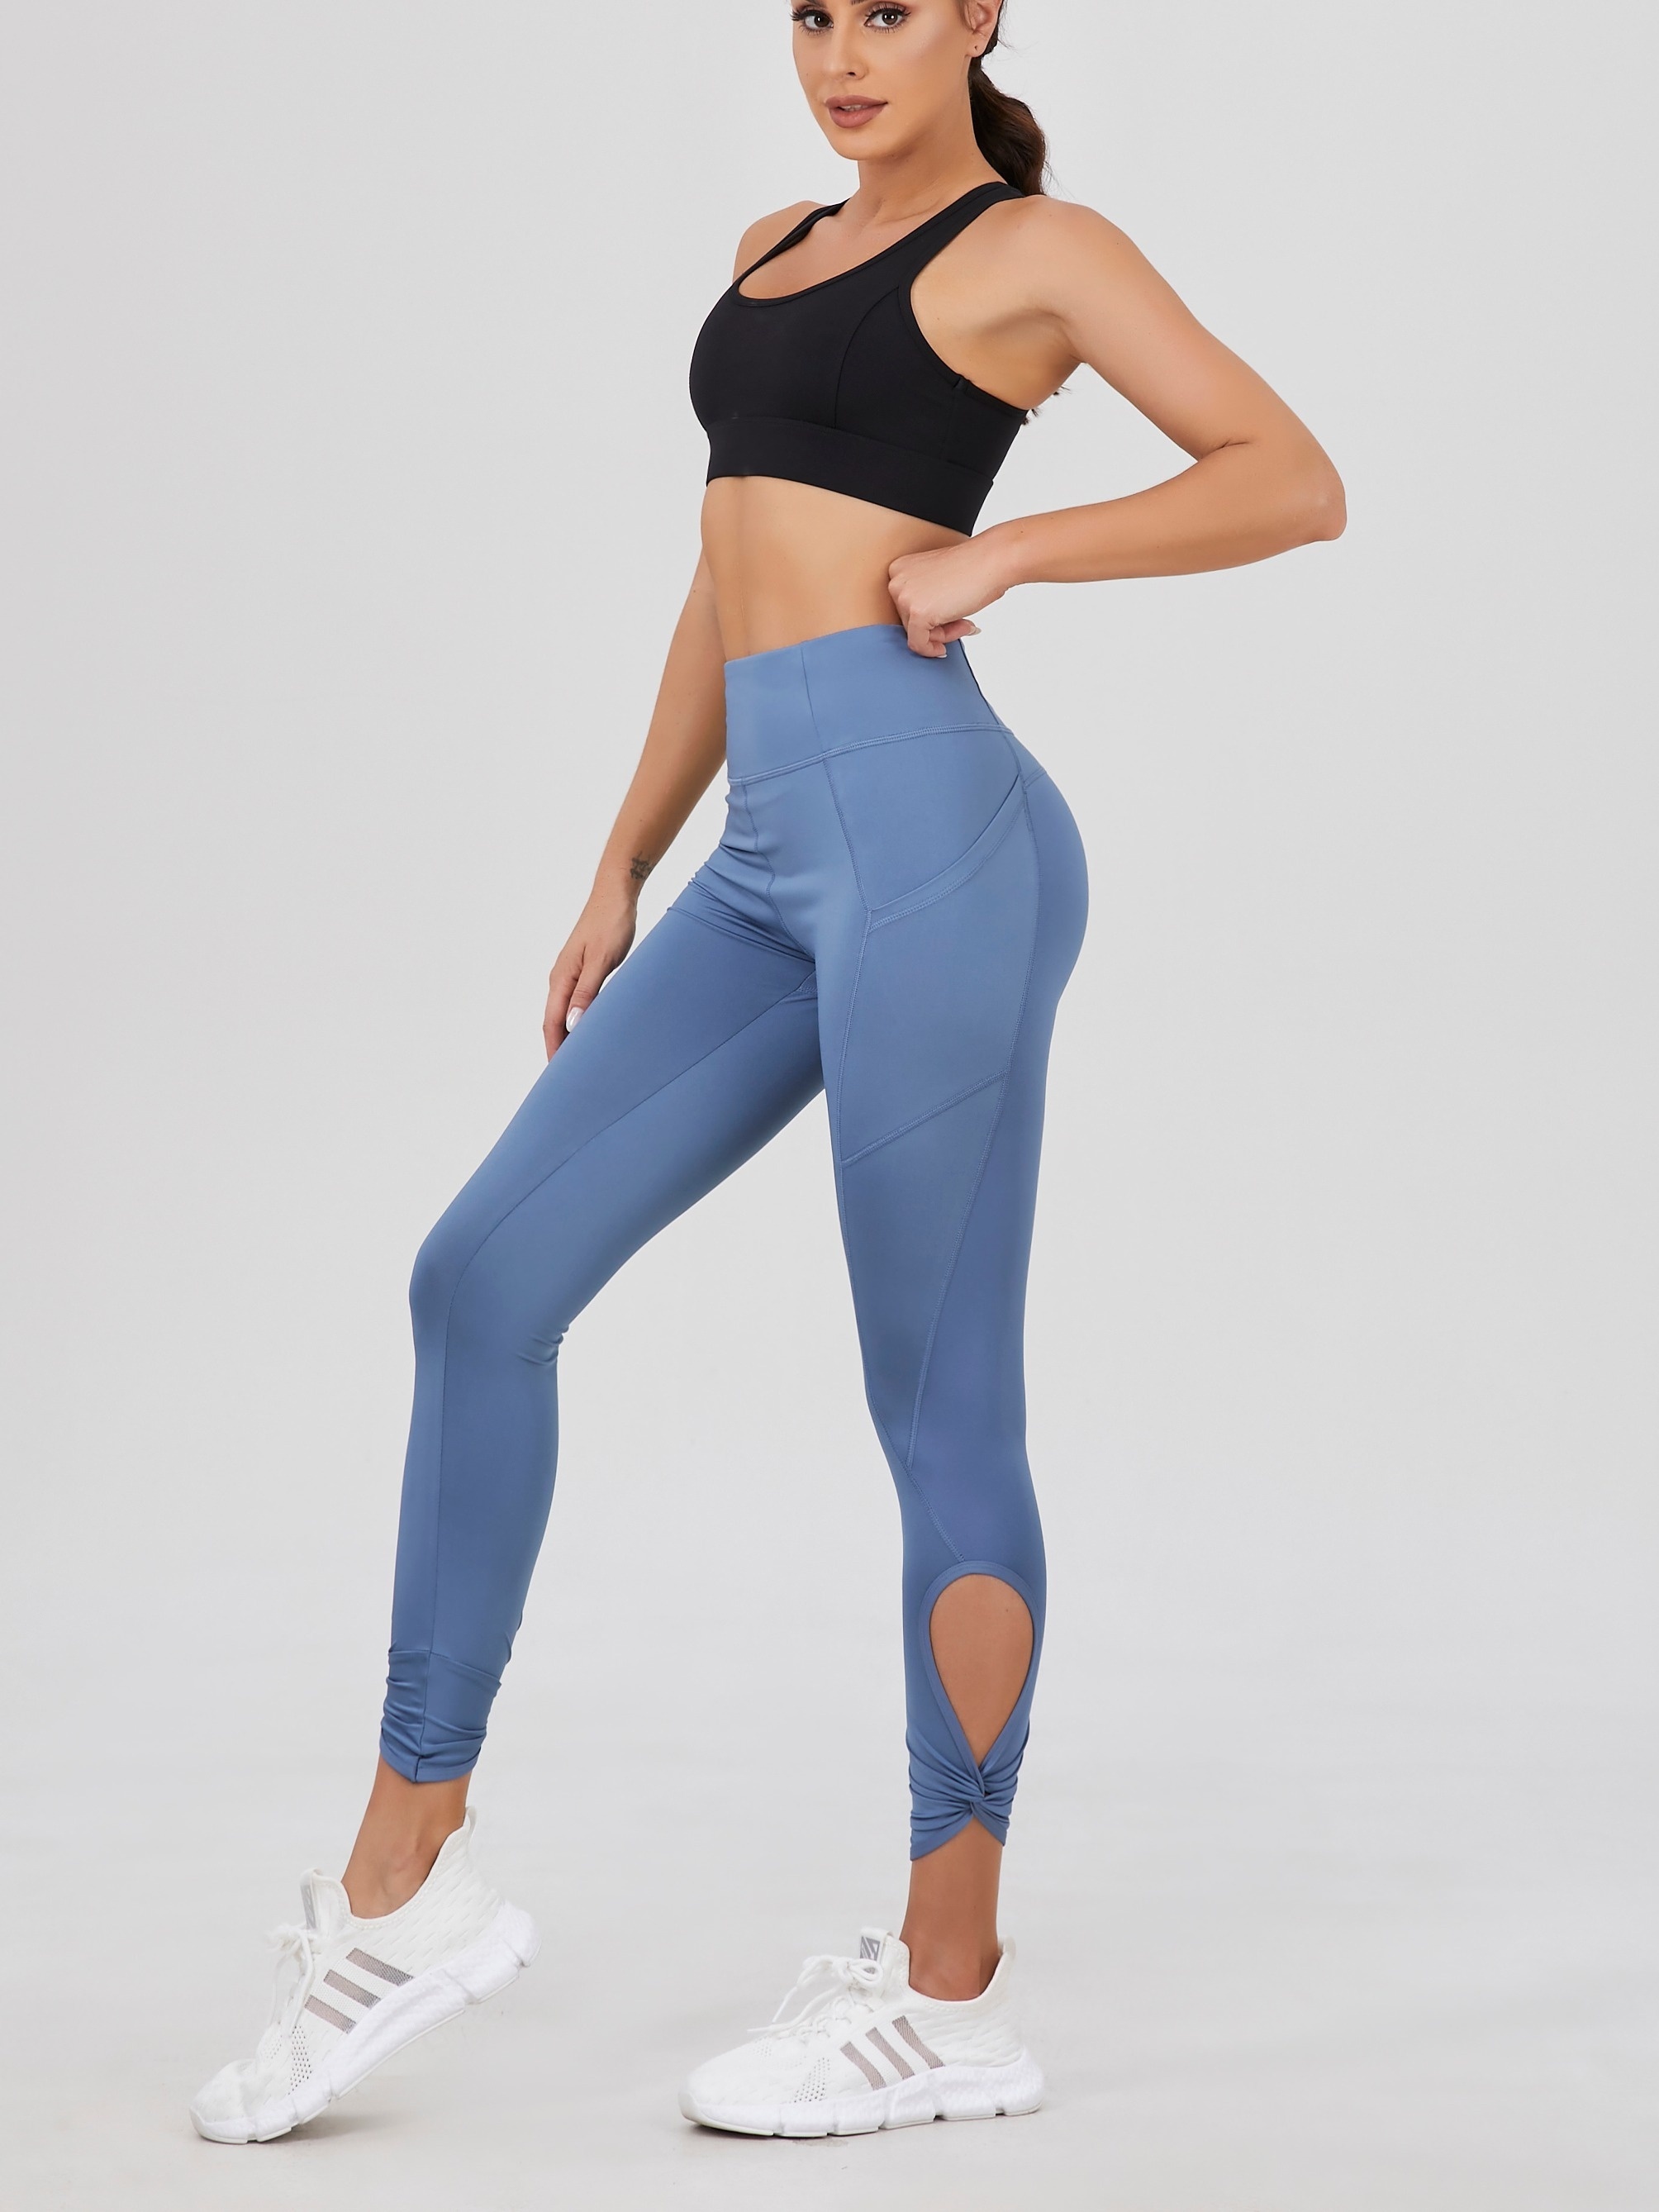 Models In Yoga Pants - Temu